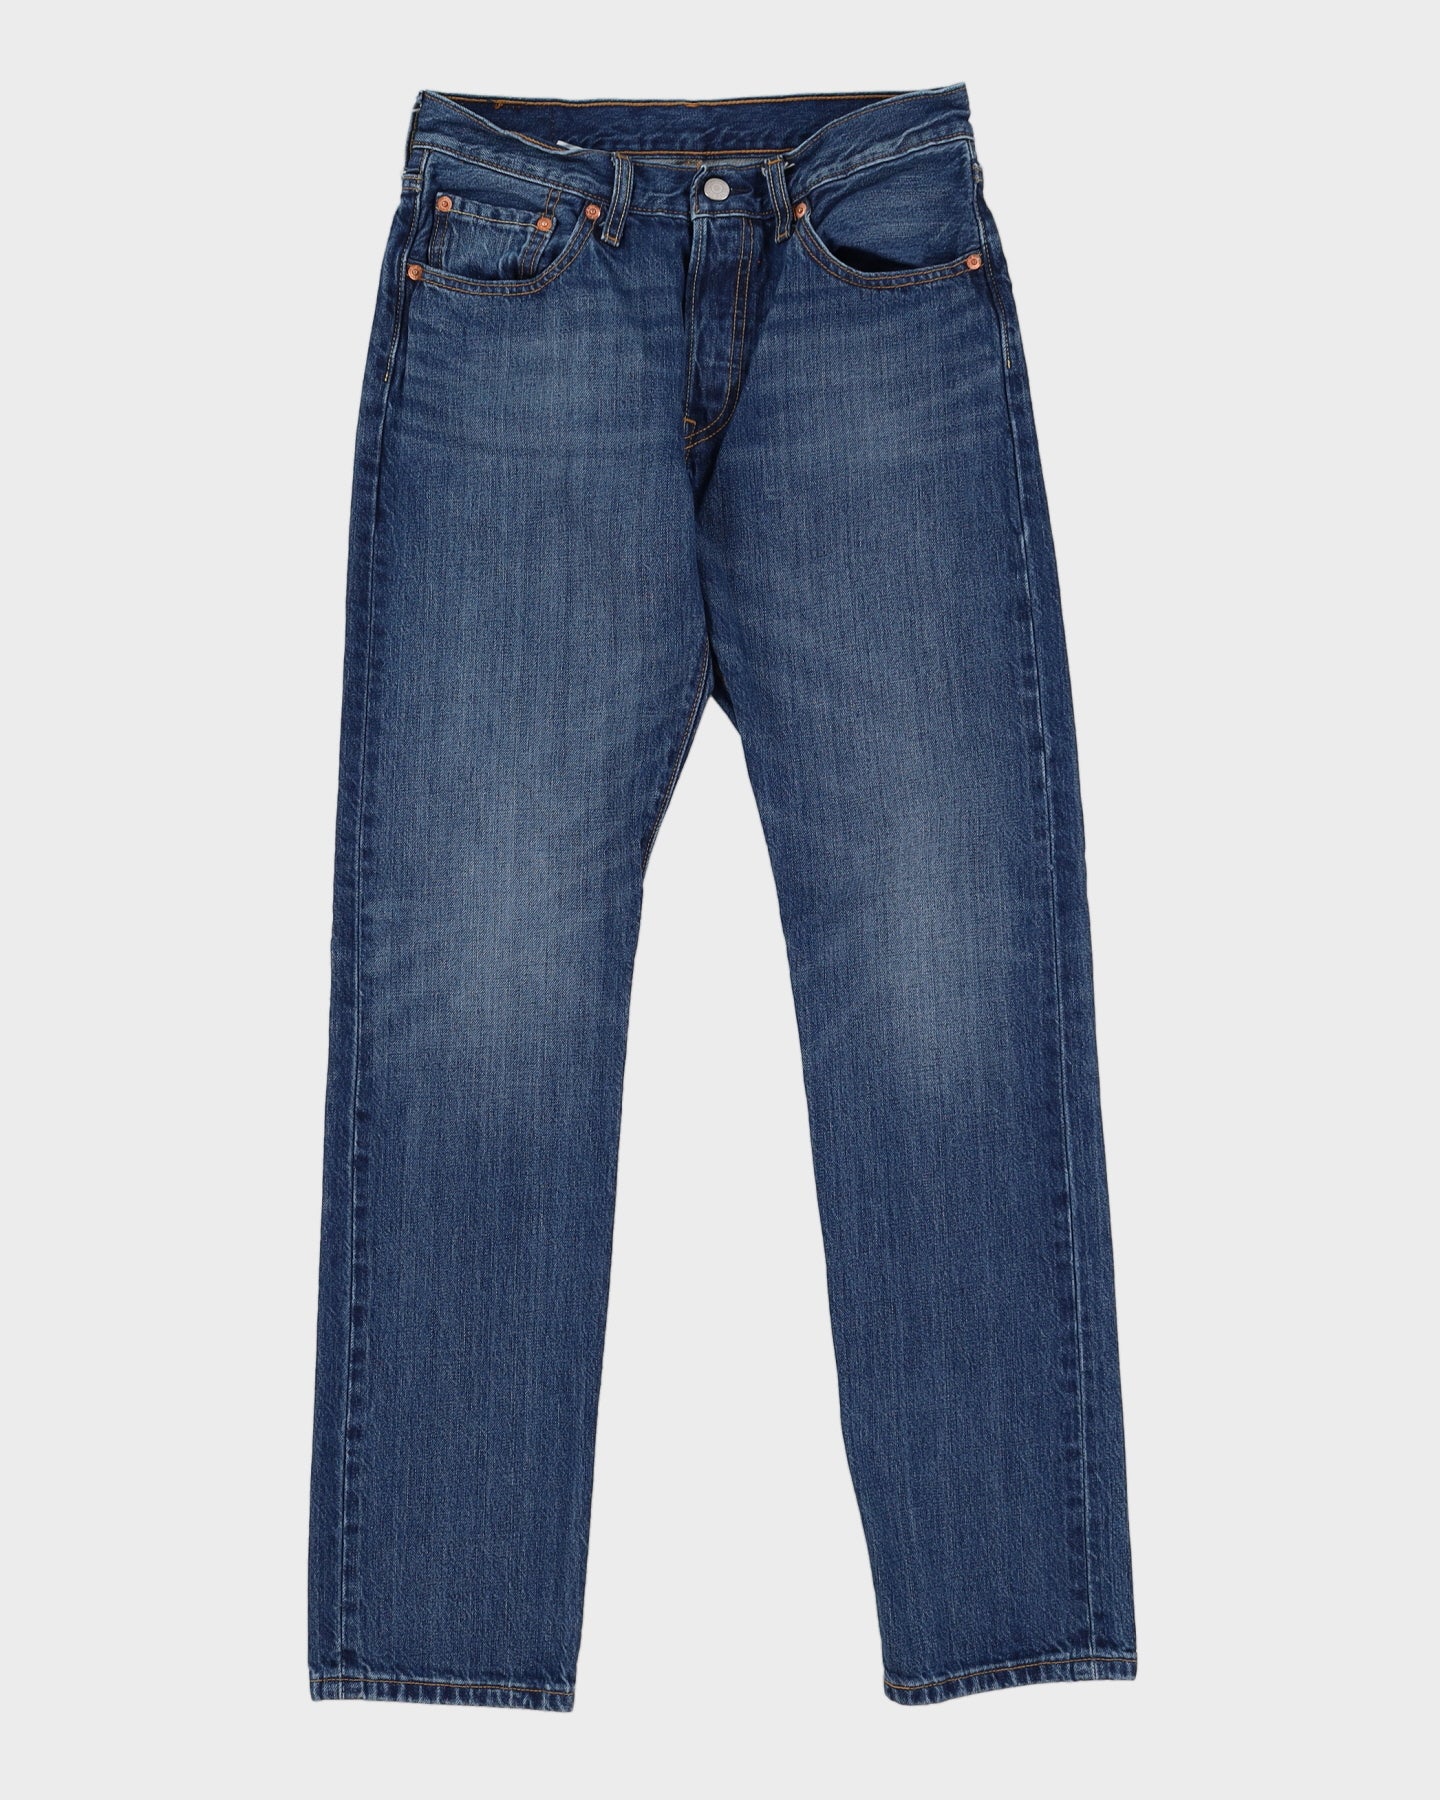 Levi's 501 Blue Jeans - W29 L31